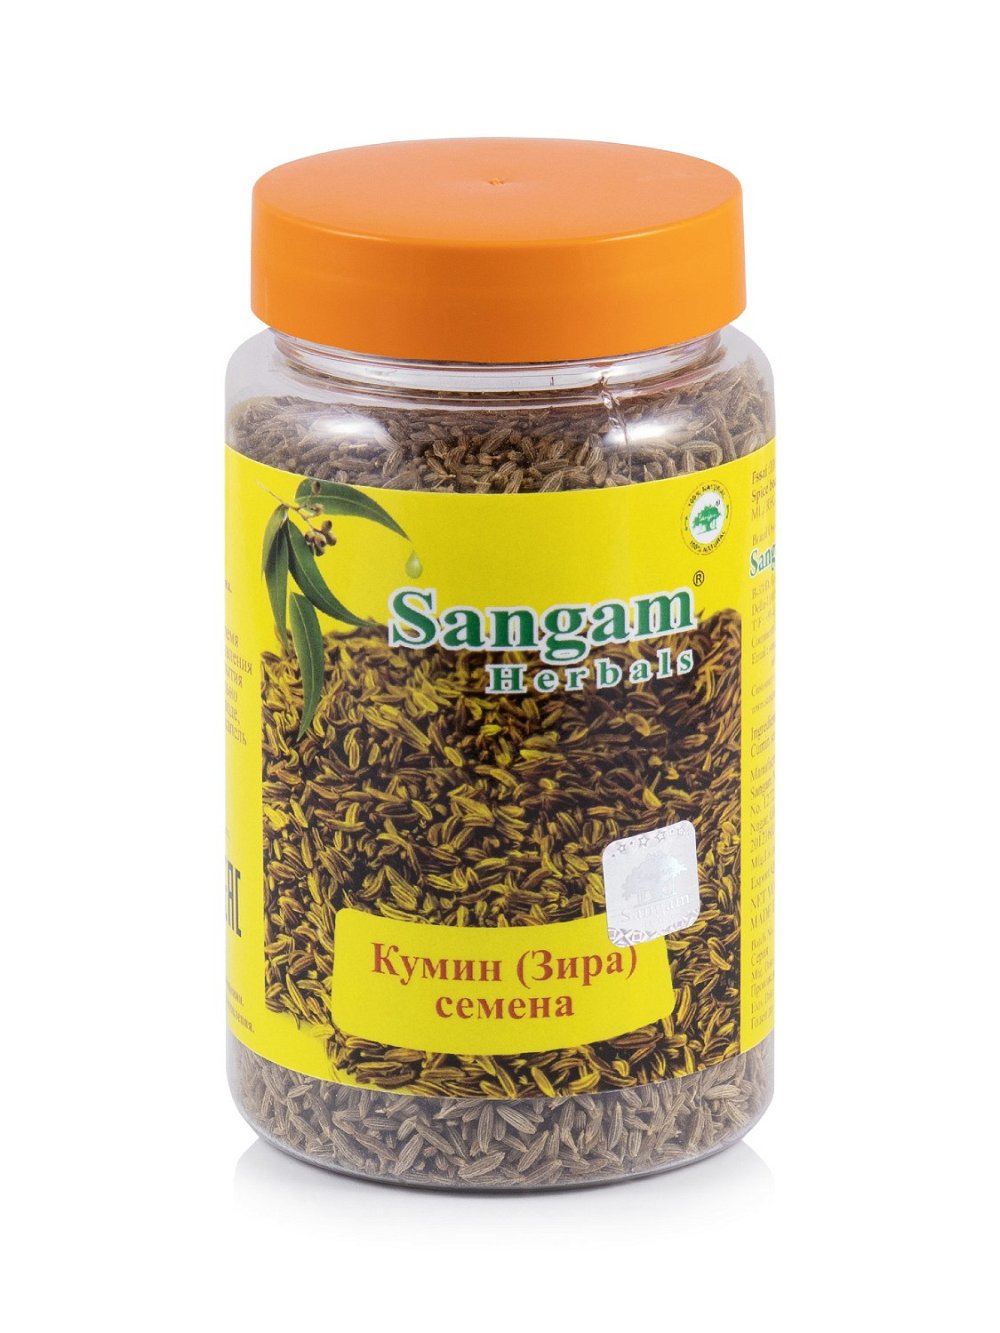 Кумин (Зира), семена Sangam Herbals (120 г), Кумин (Зира) семена